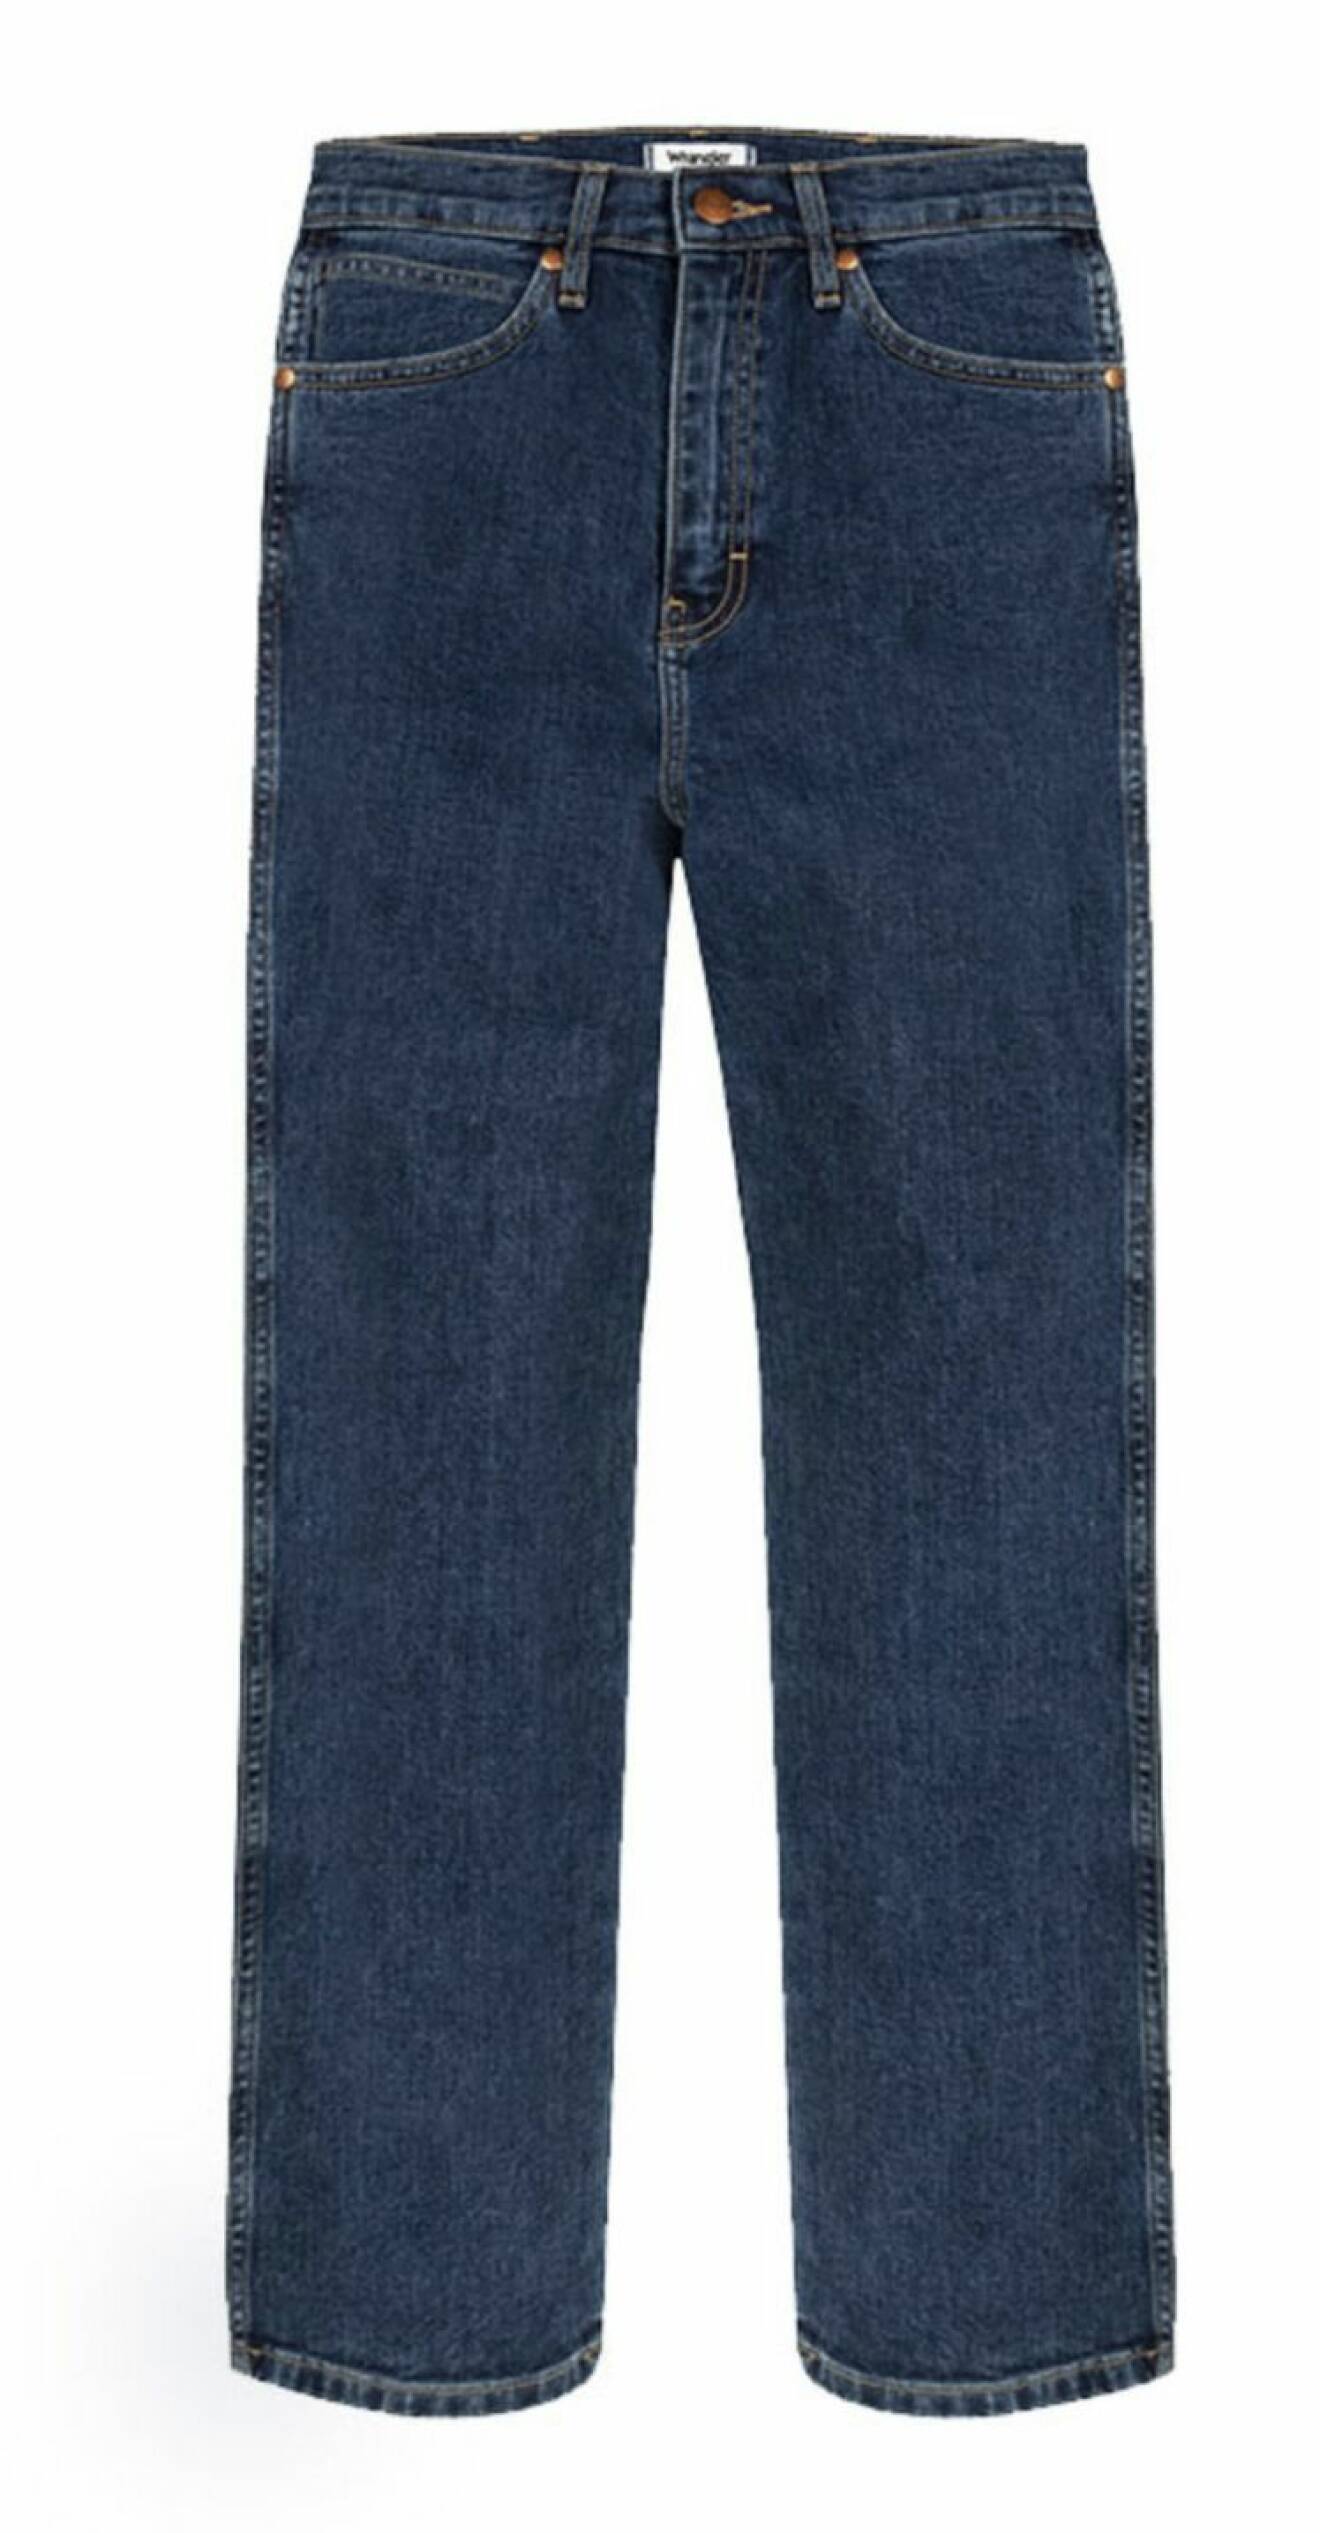 jeans wrangler